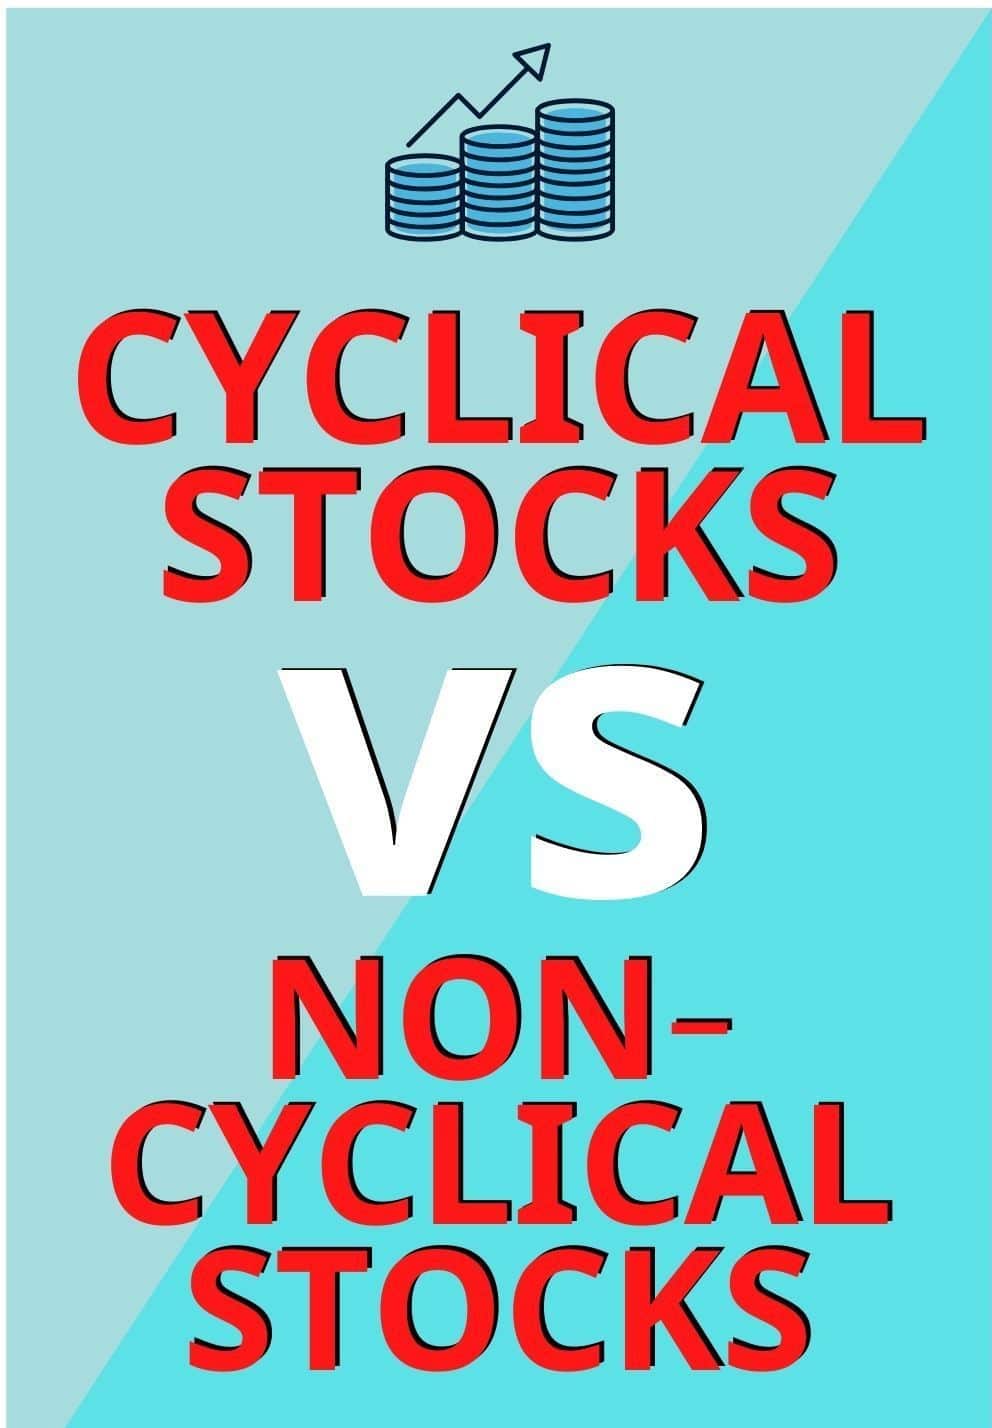 cyclical and non-cyclical stocks